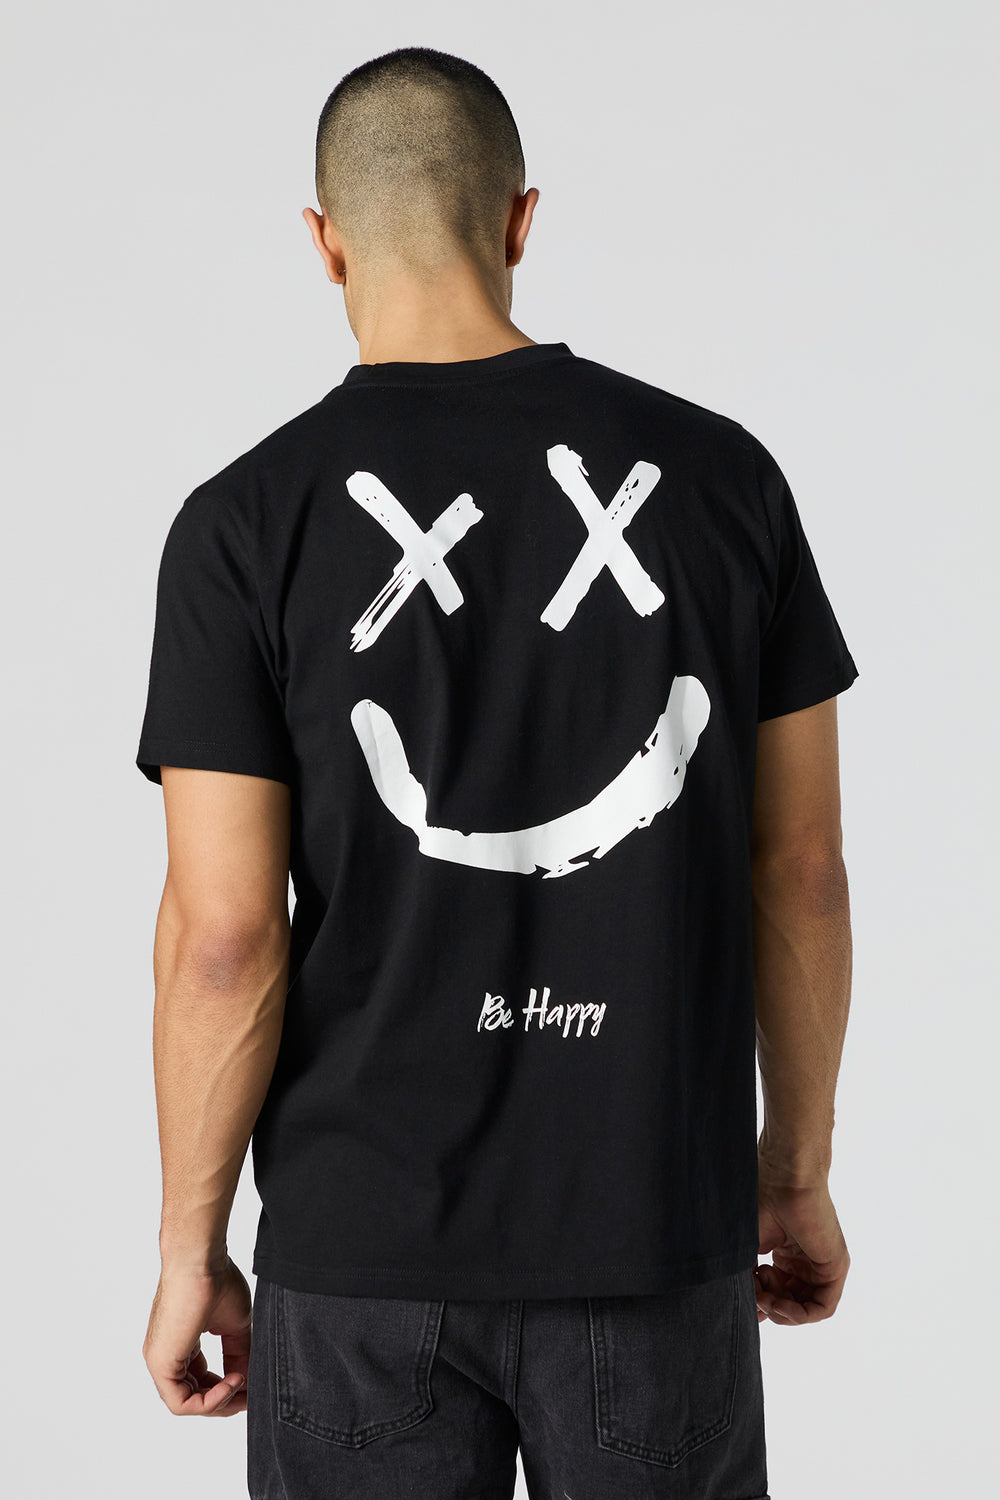 Be Happy Graphic T-Shirt Be Happy Graphic T-Shirt 4